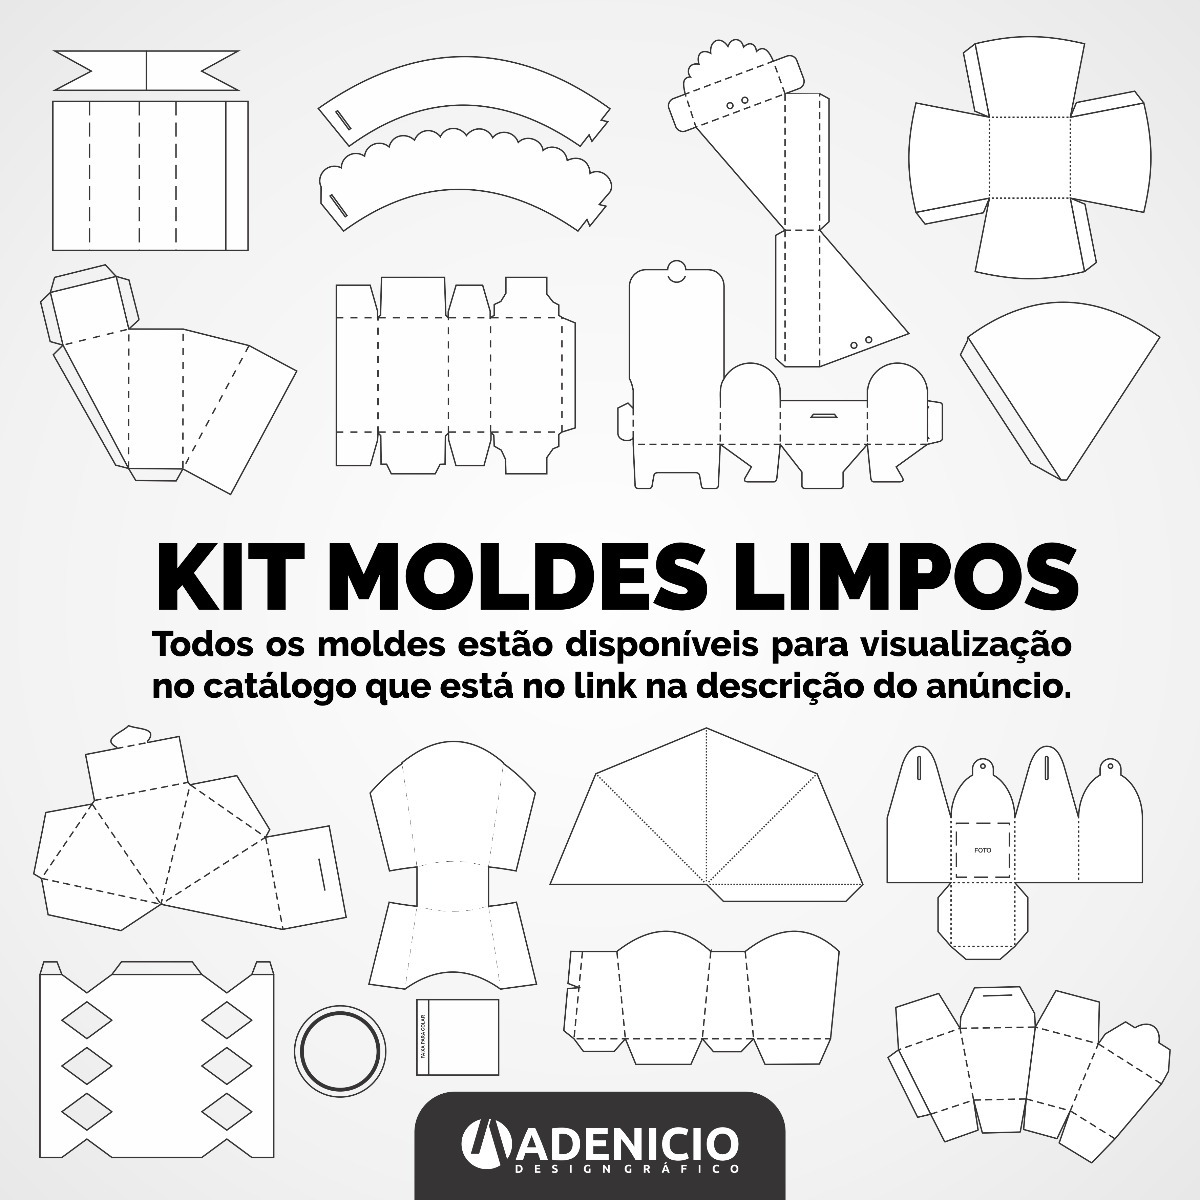 104 Moldes Limpos Kit Festa Digital Vetor Coreldraw R 62 40